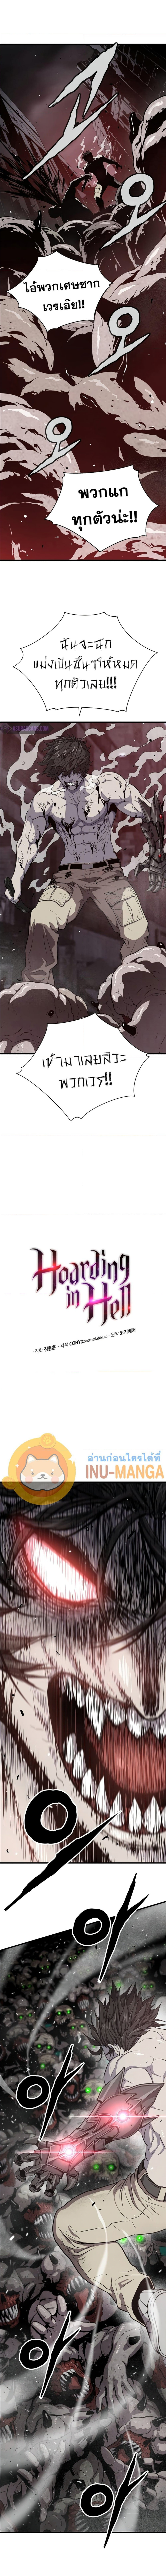 Hoarding-in-Hell-37_03.jpg